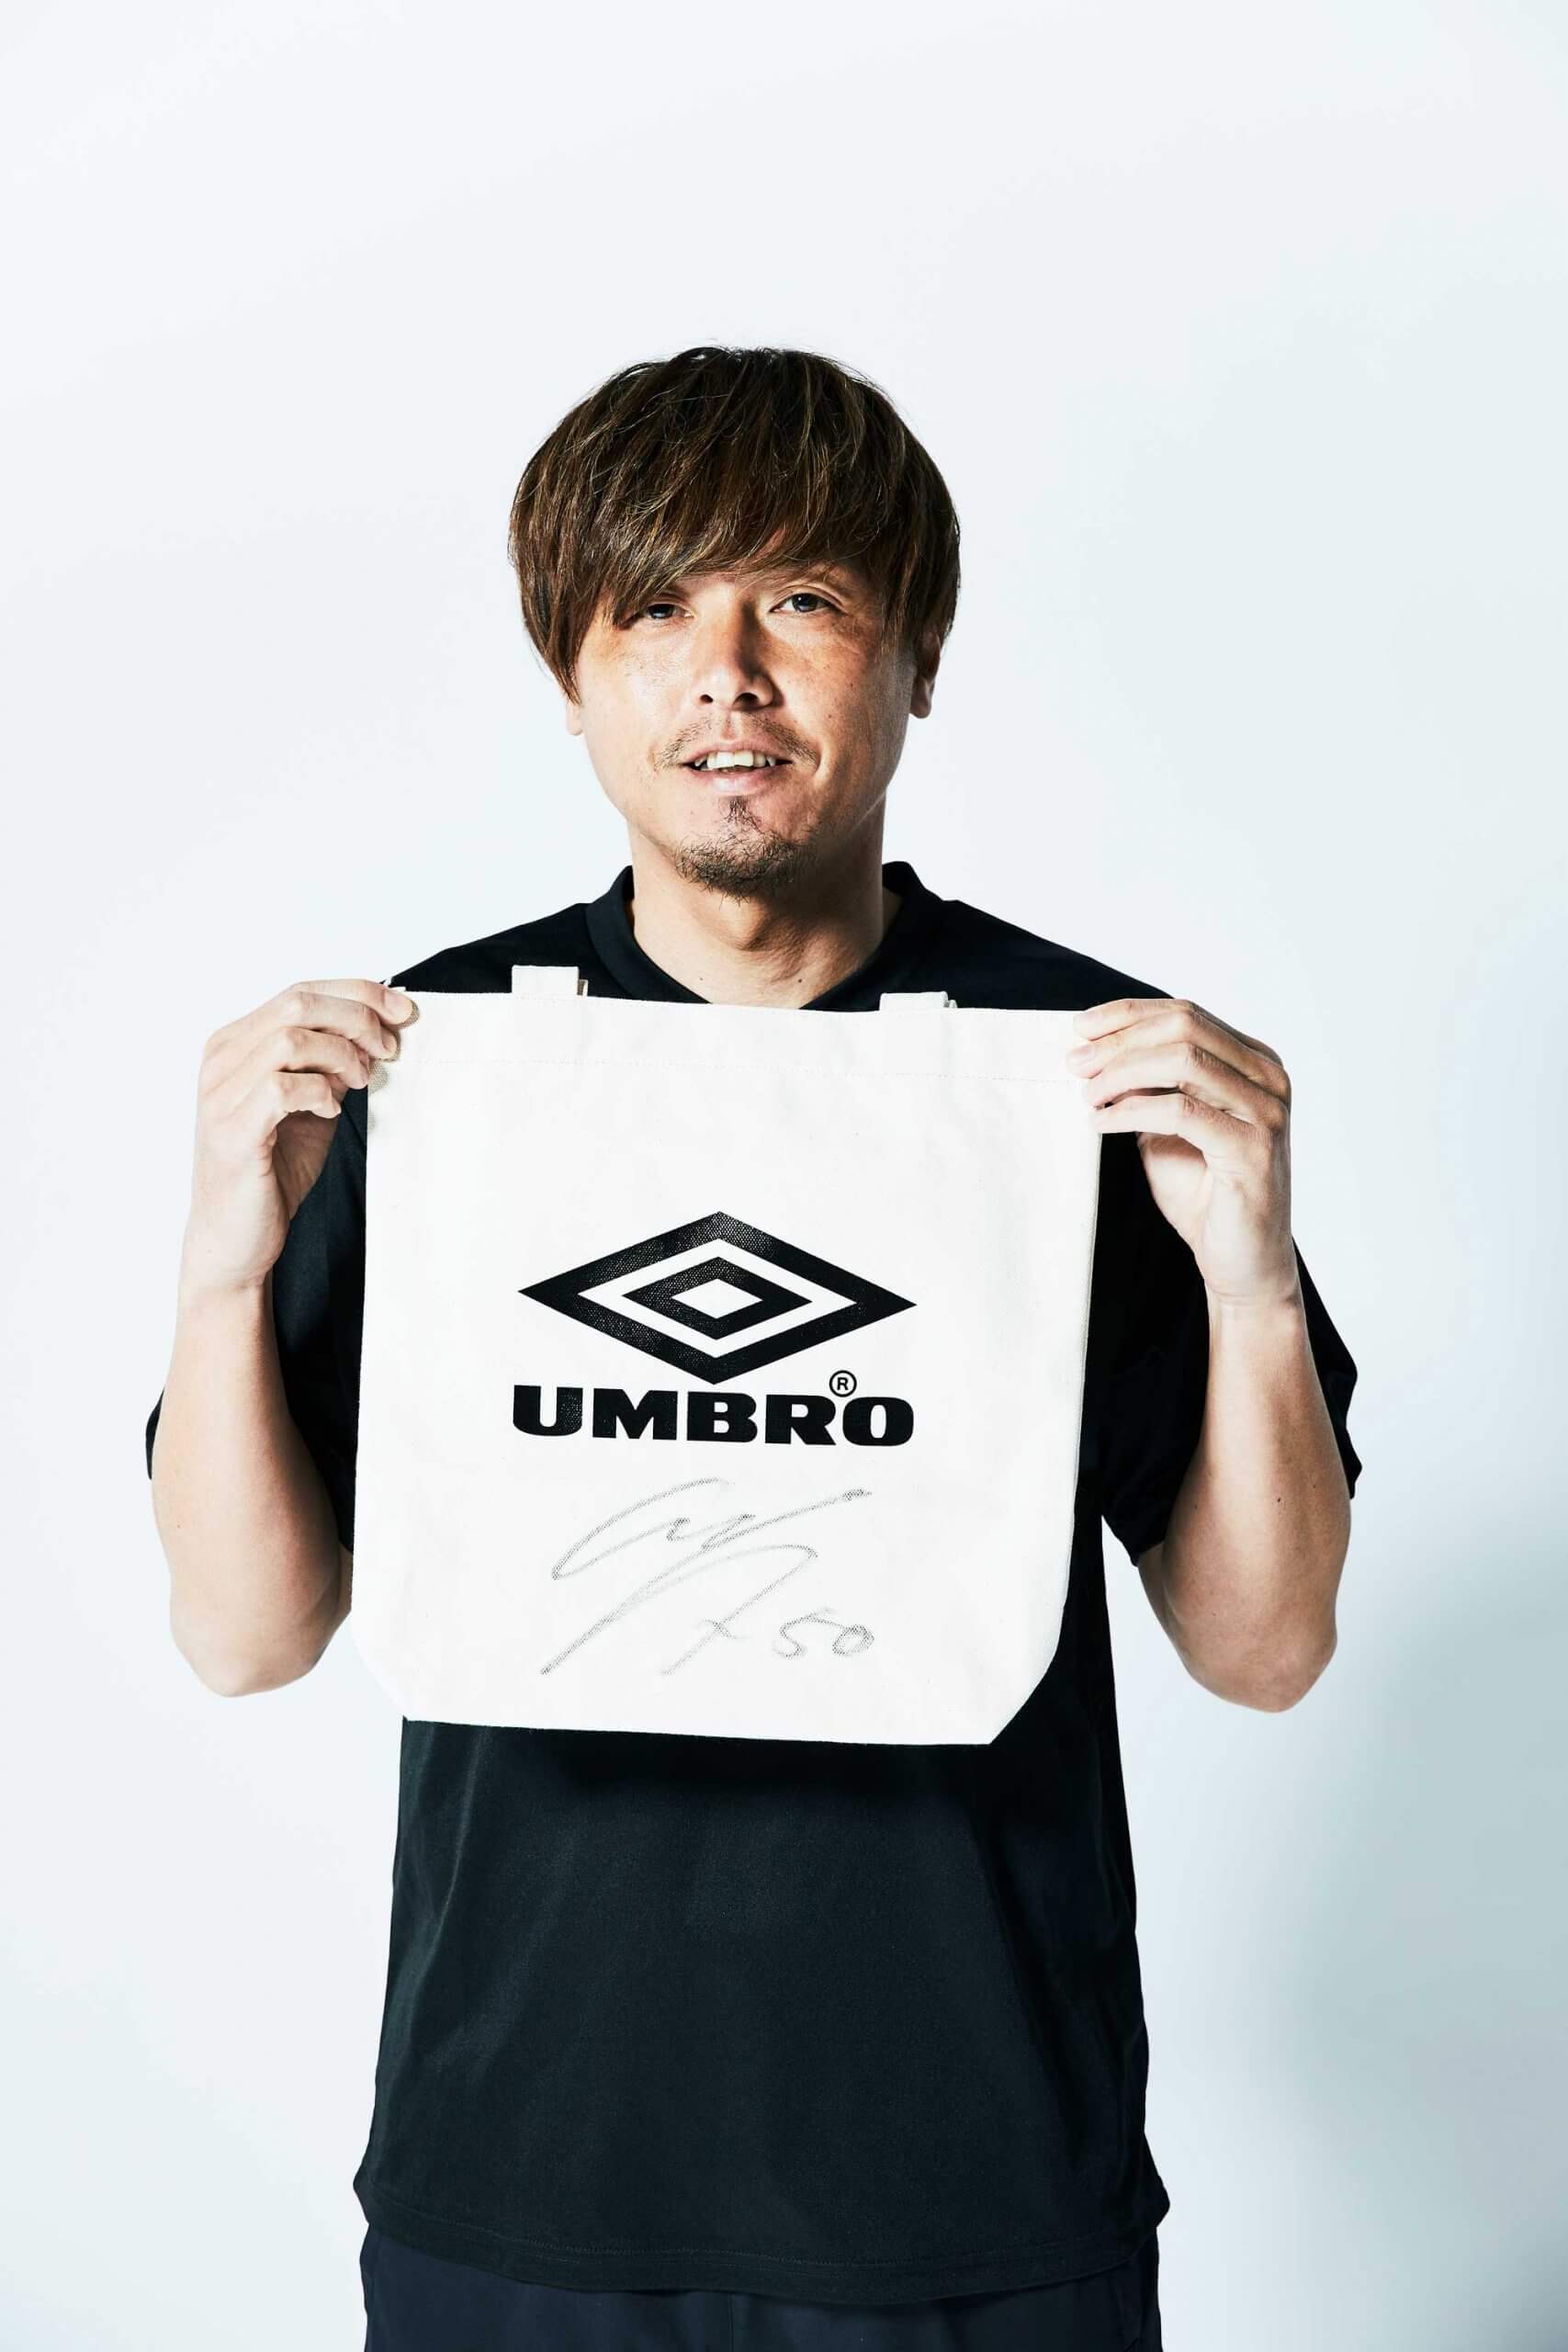 遠藤保仁選手サイン入りユニフォーム『値段交渉待ってます』スポーツ